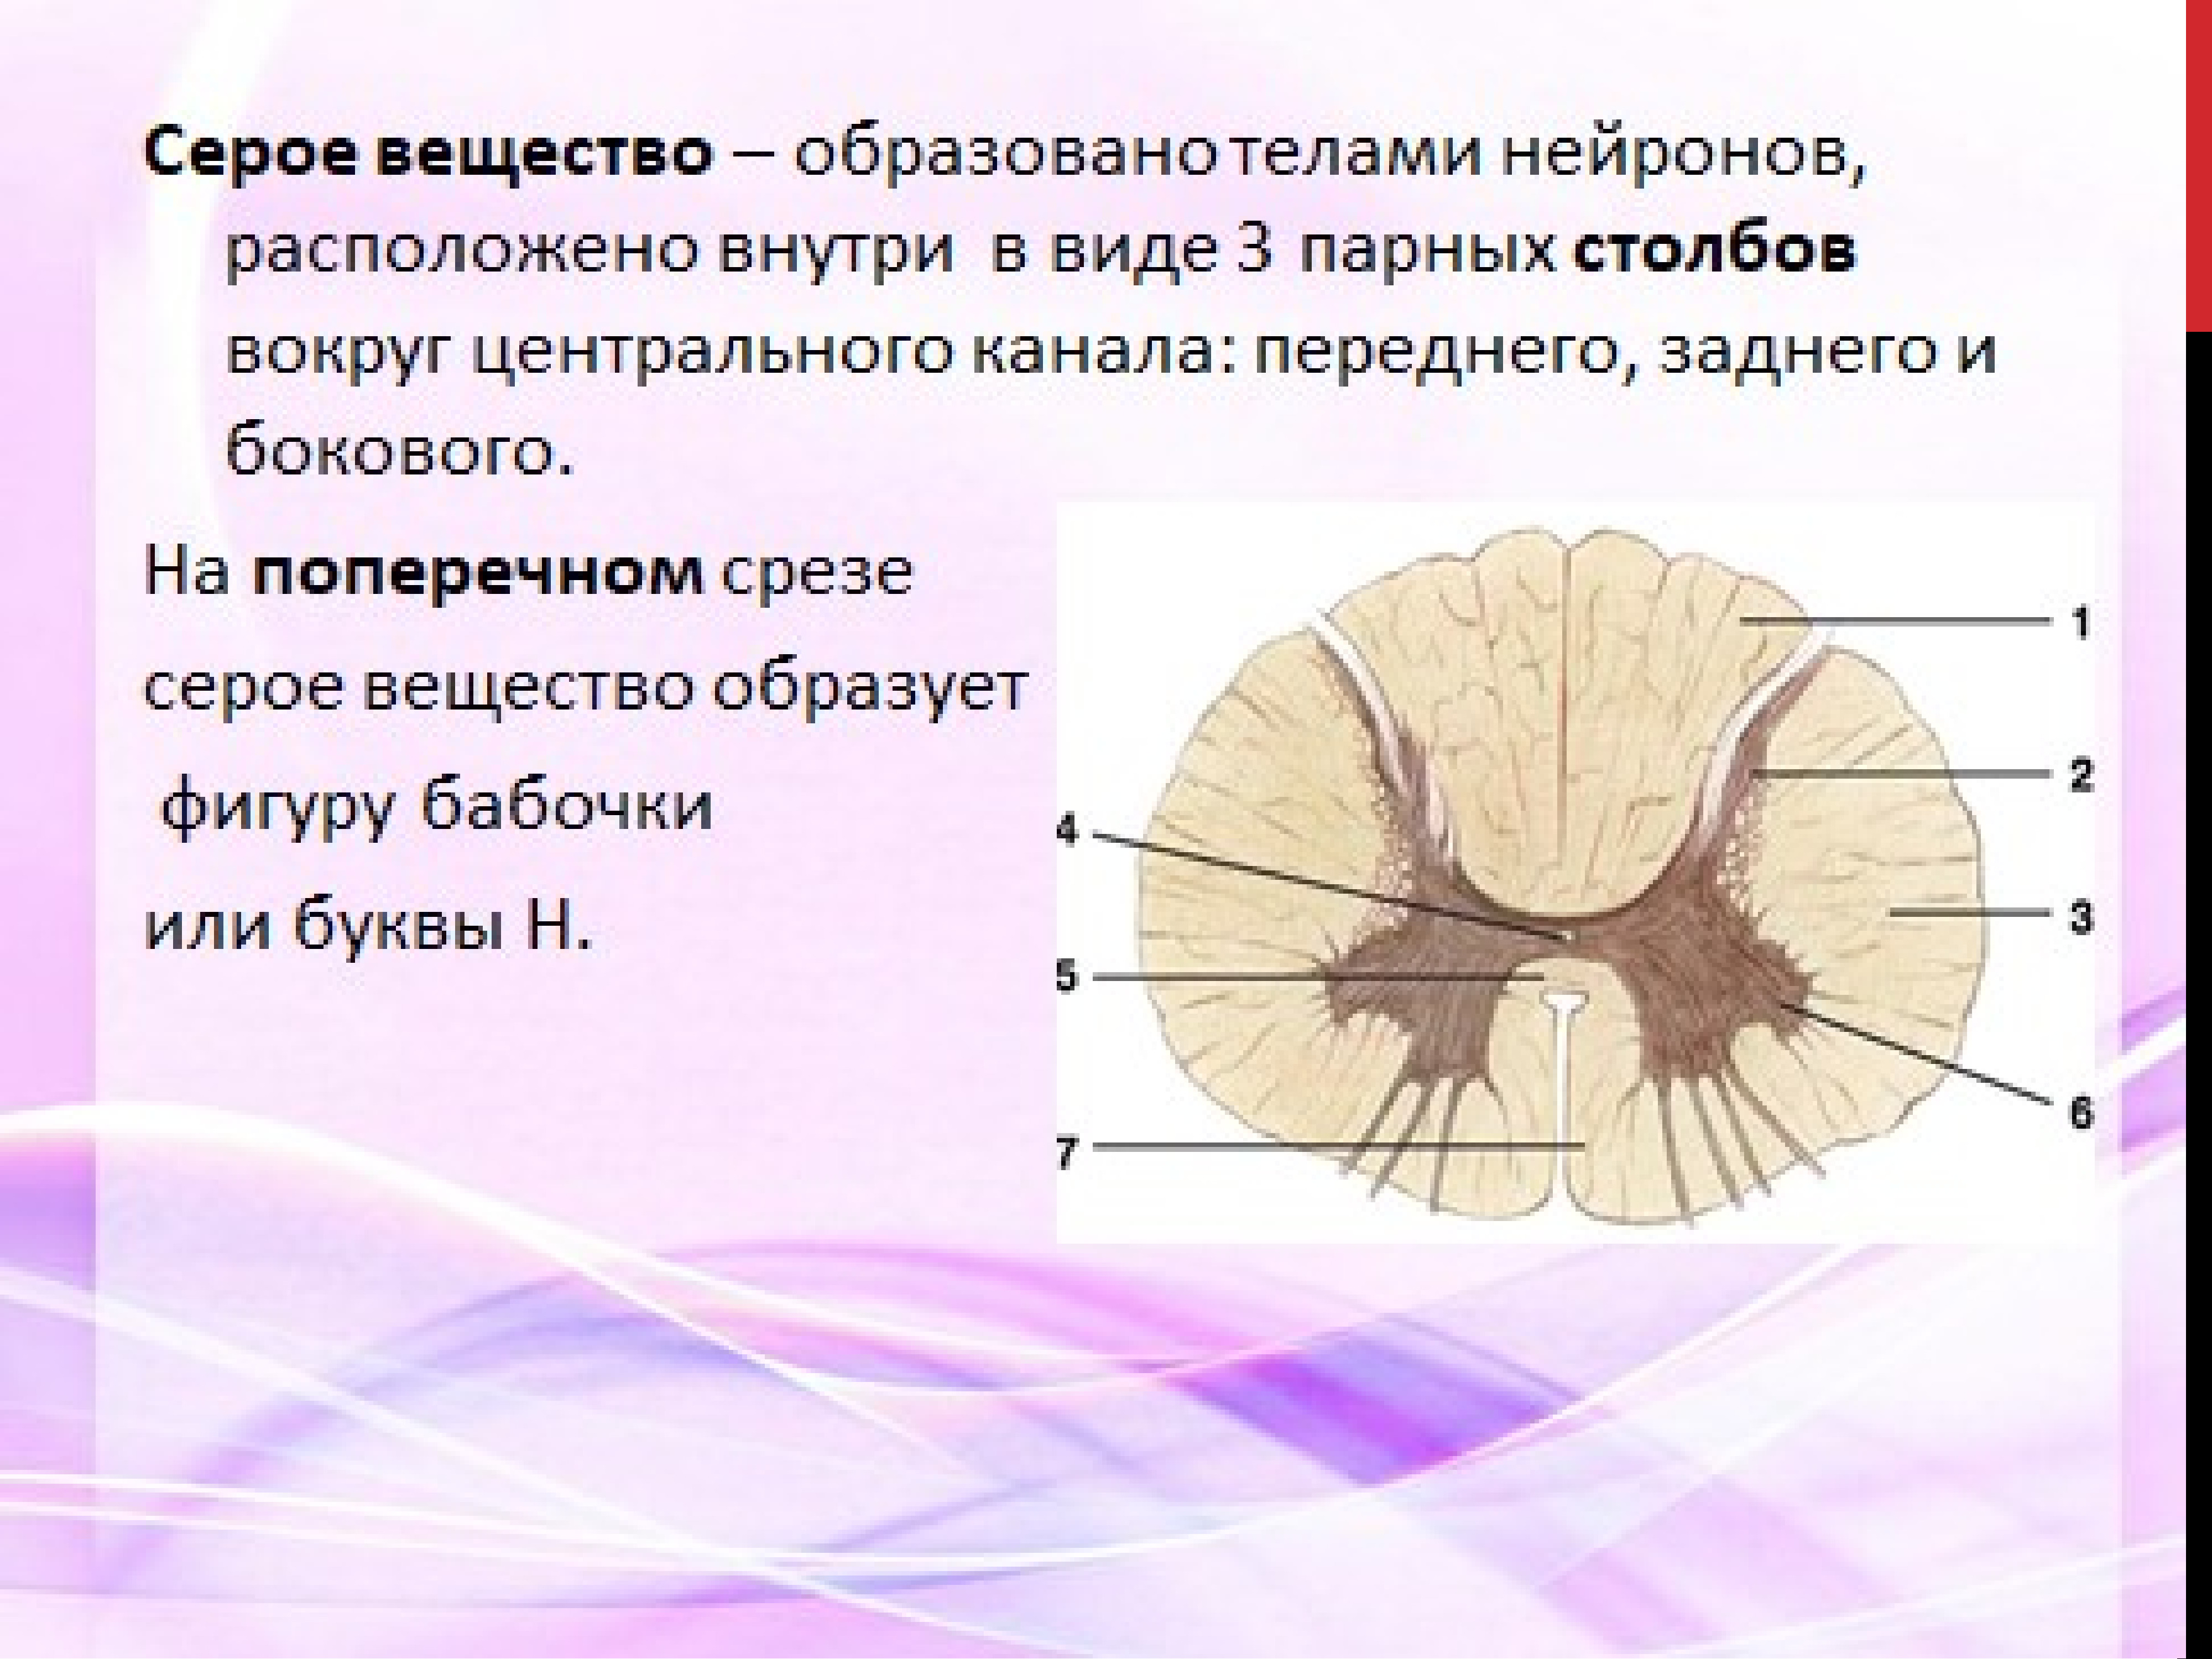 Белое вещество головного и спинного мозга образуют